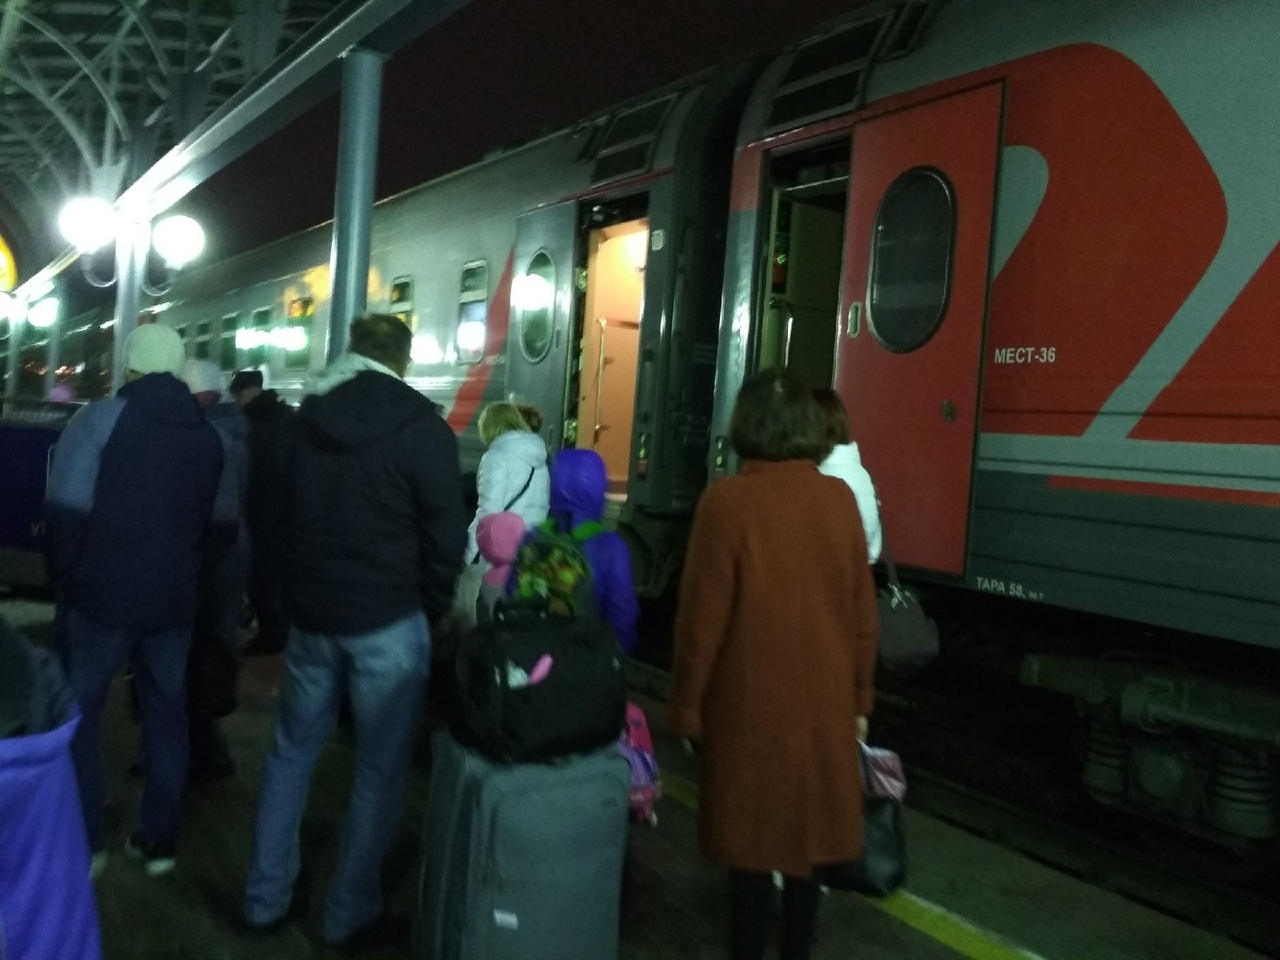 "Унижают выворачиванием карманов": ярославец о "пытках" на вокзале